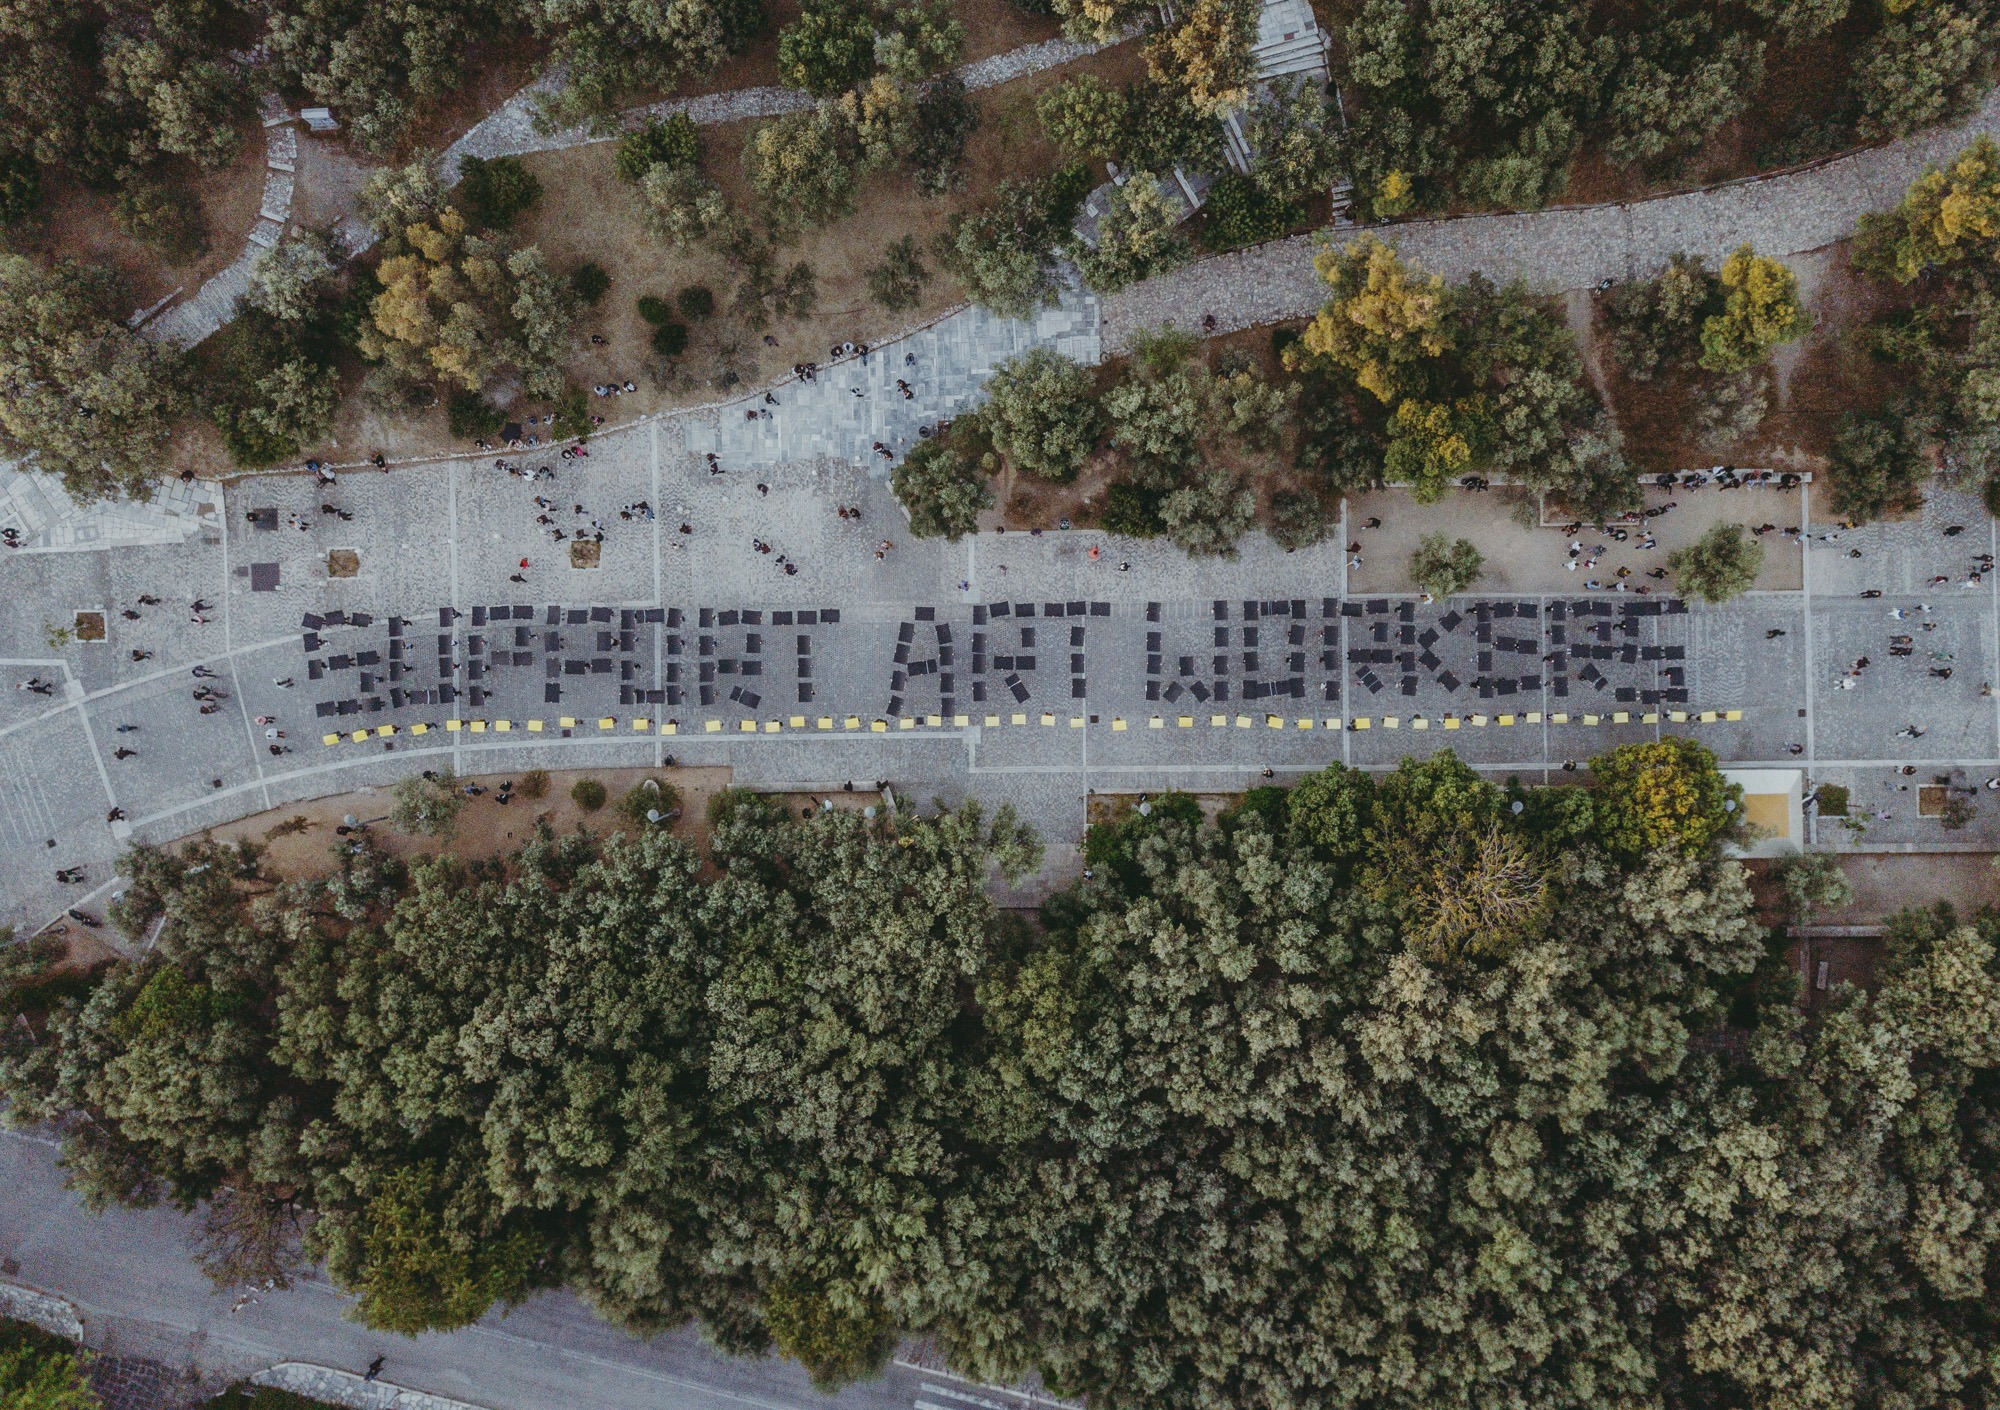 Το μήνυμα είναι : “Support Art Workers”